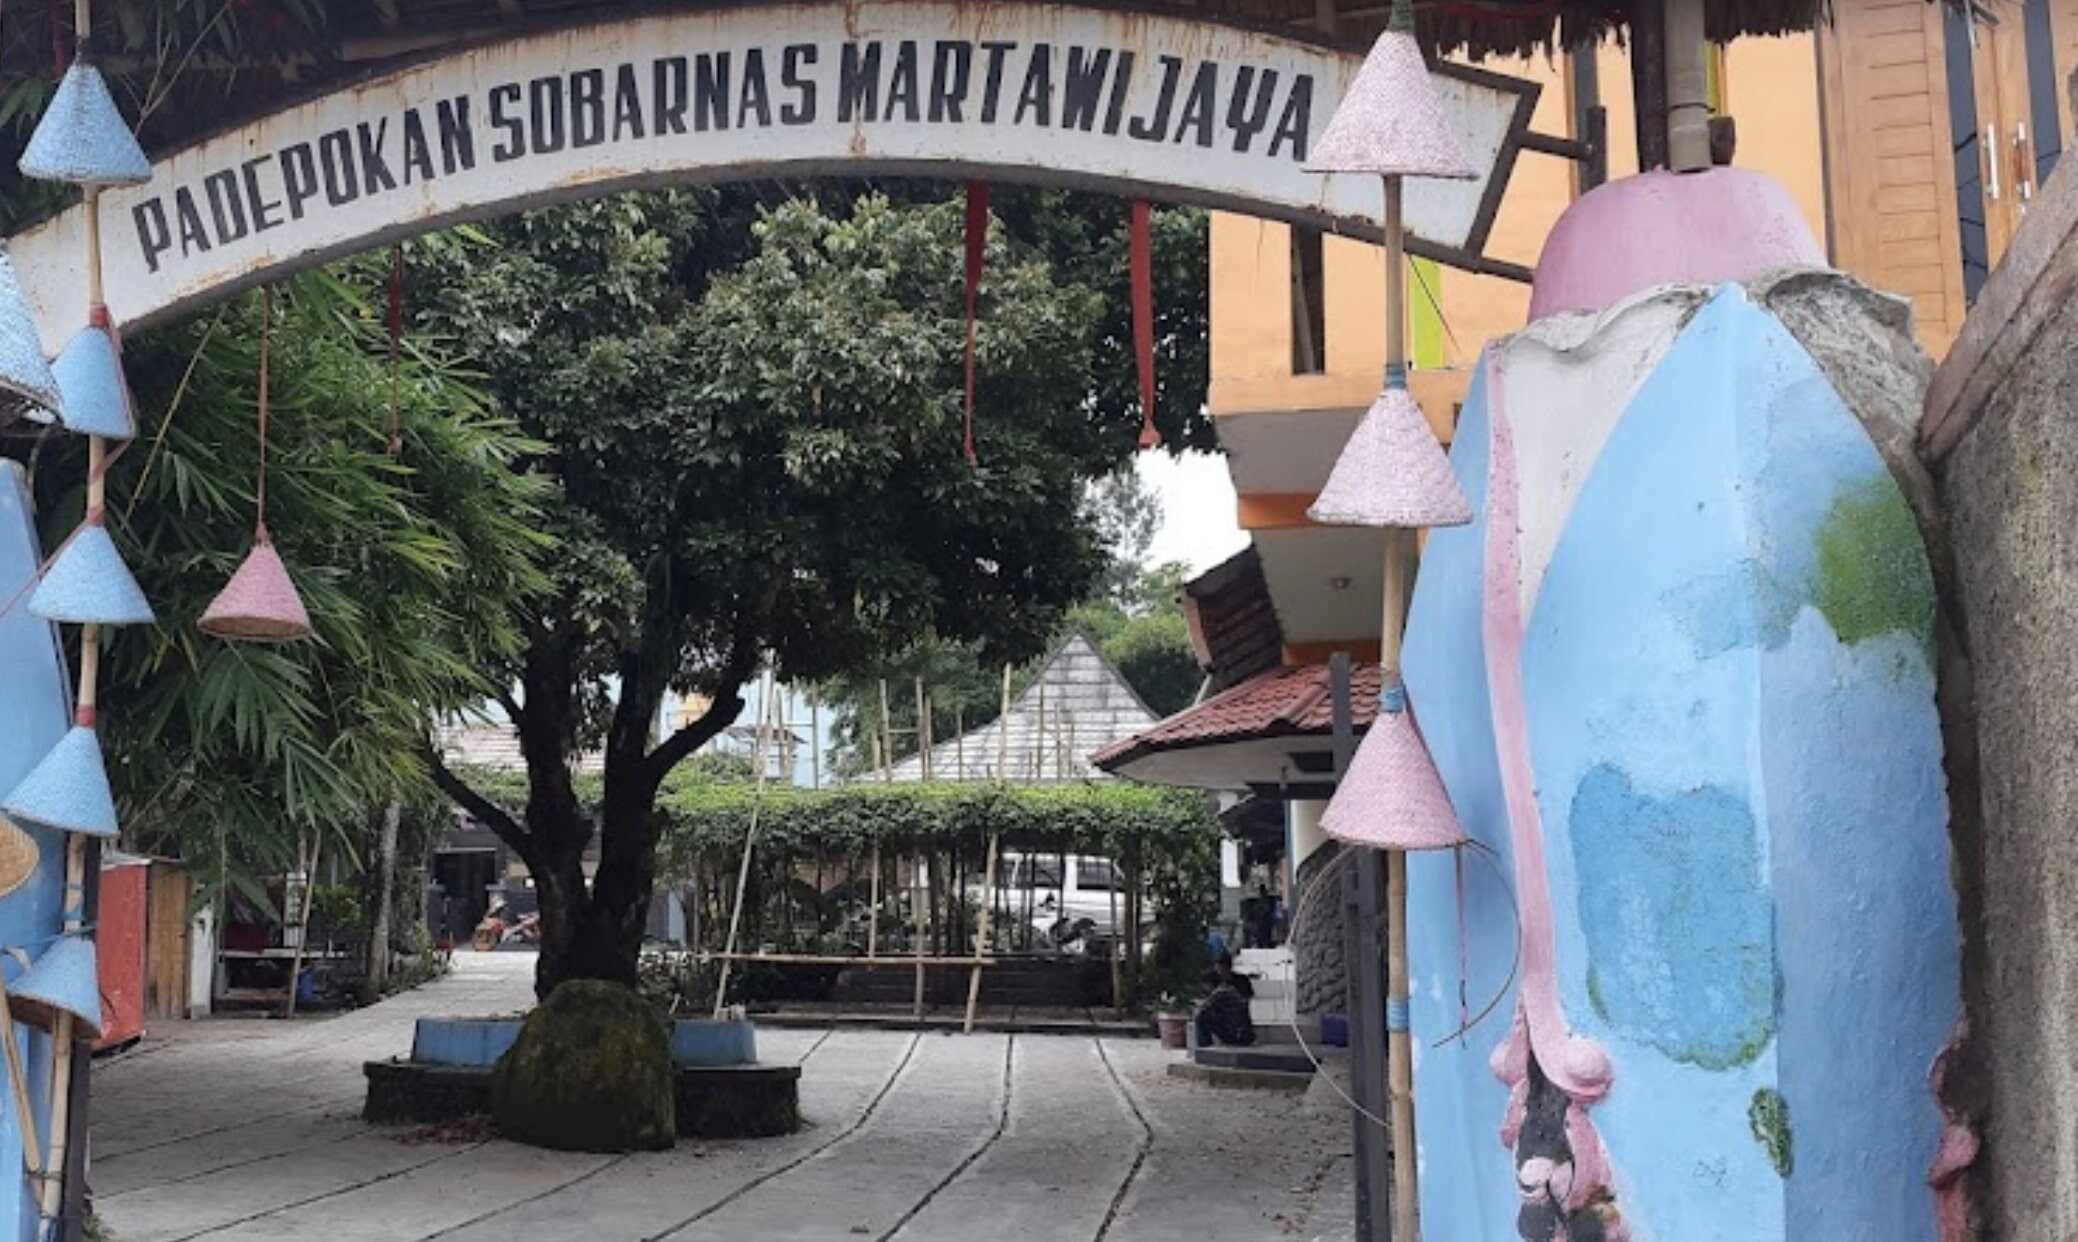 Padepokan Sobarnas Martawijaya, Padepokan Seni Kebanggan Warga Kota Intan